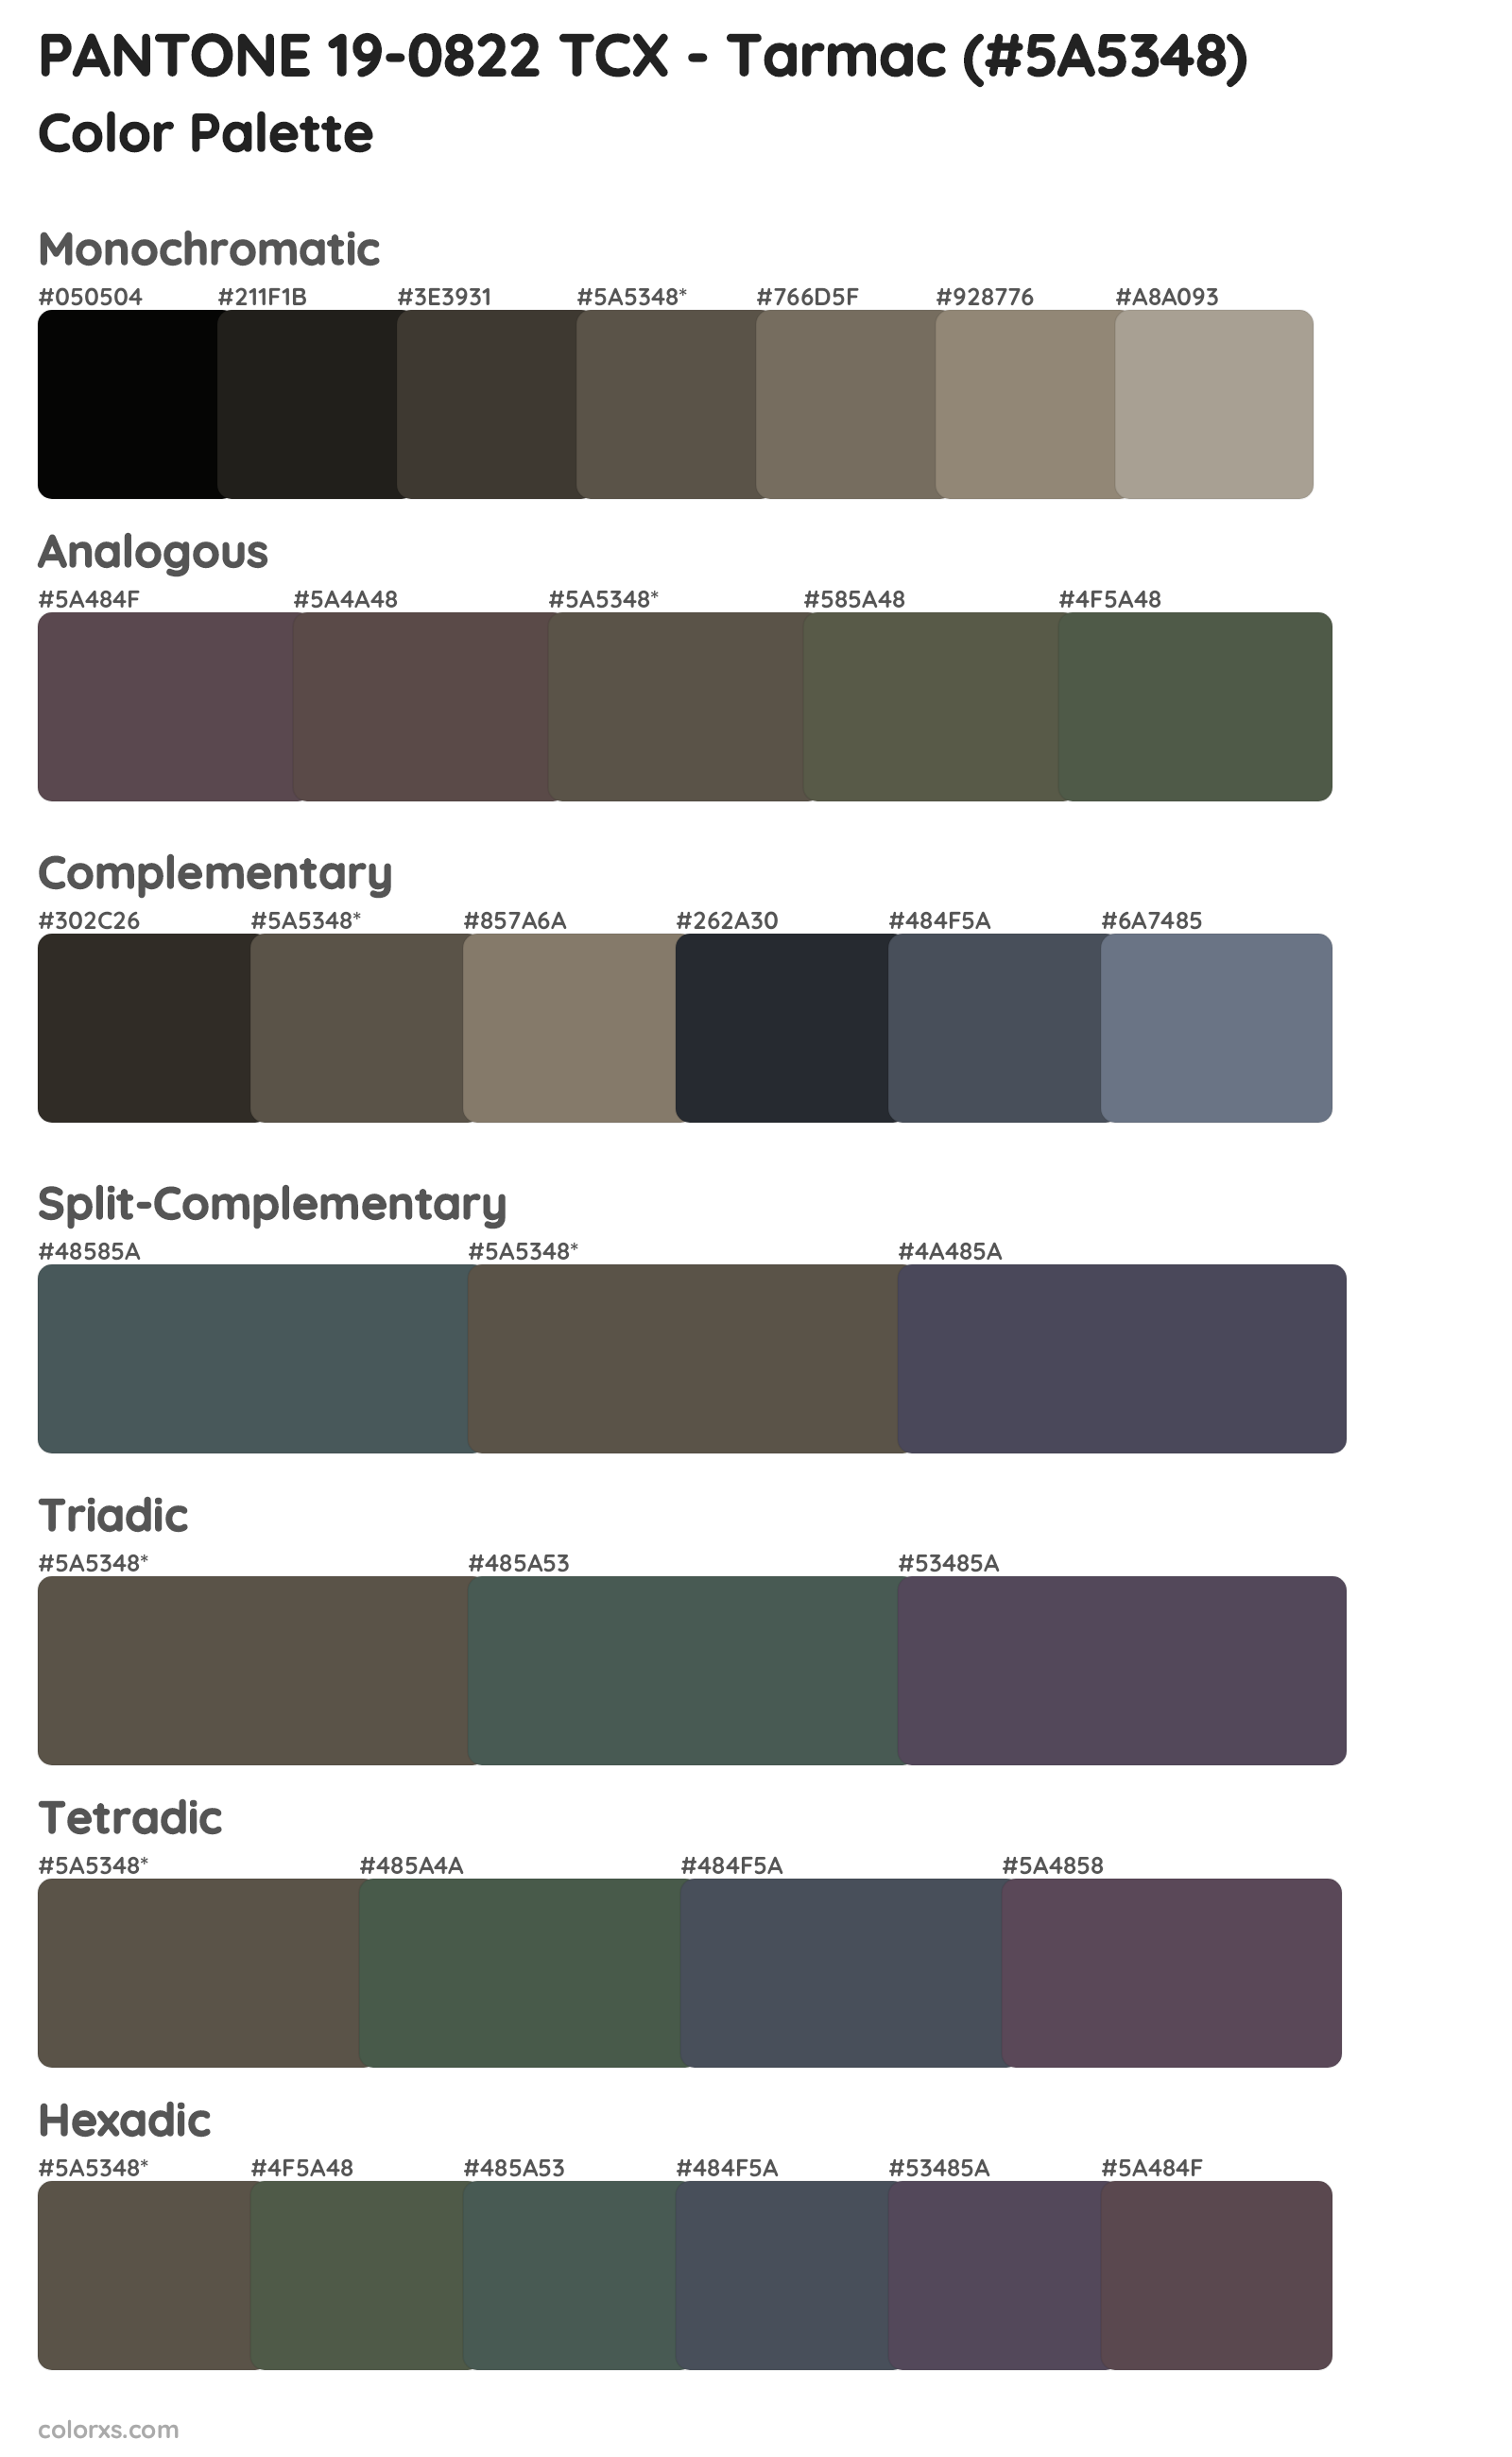 PANTONE 19-0822 TCX - Tarmac Color Scheme Palettes